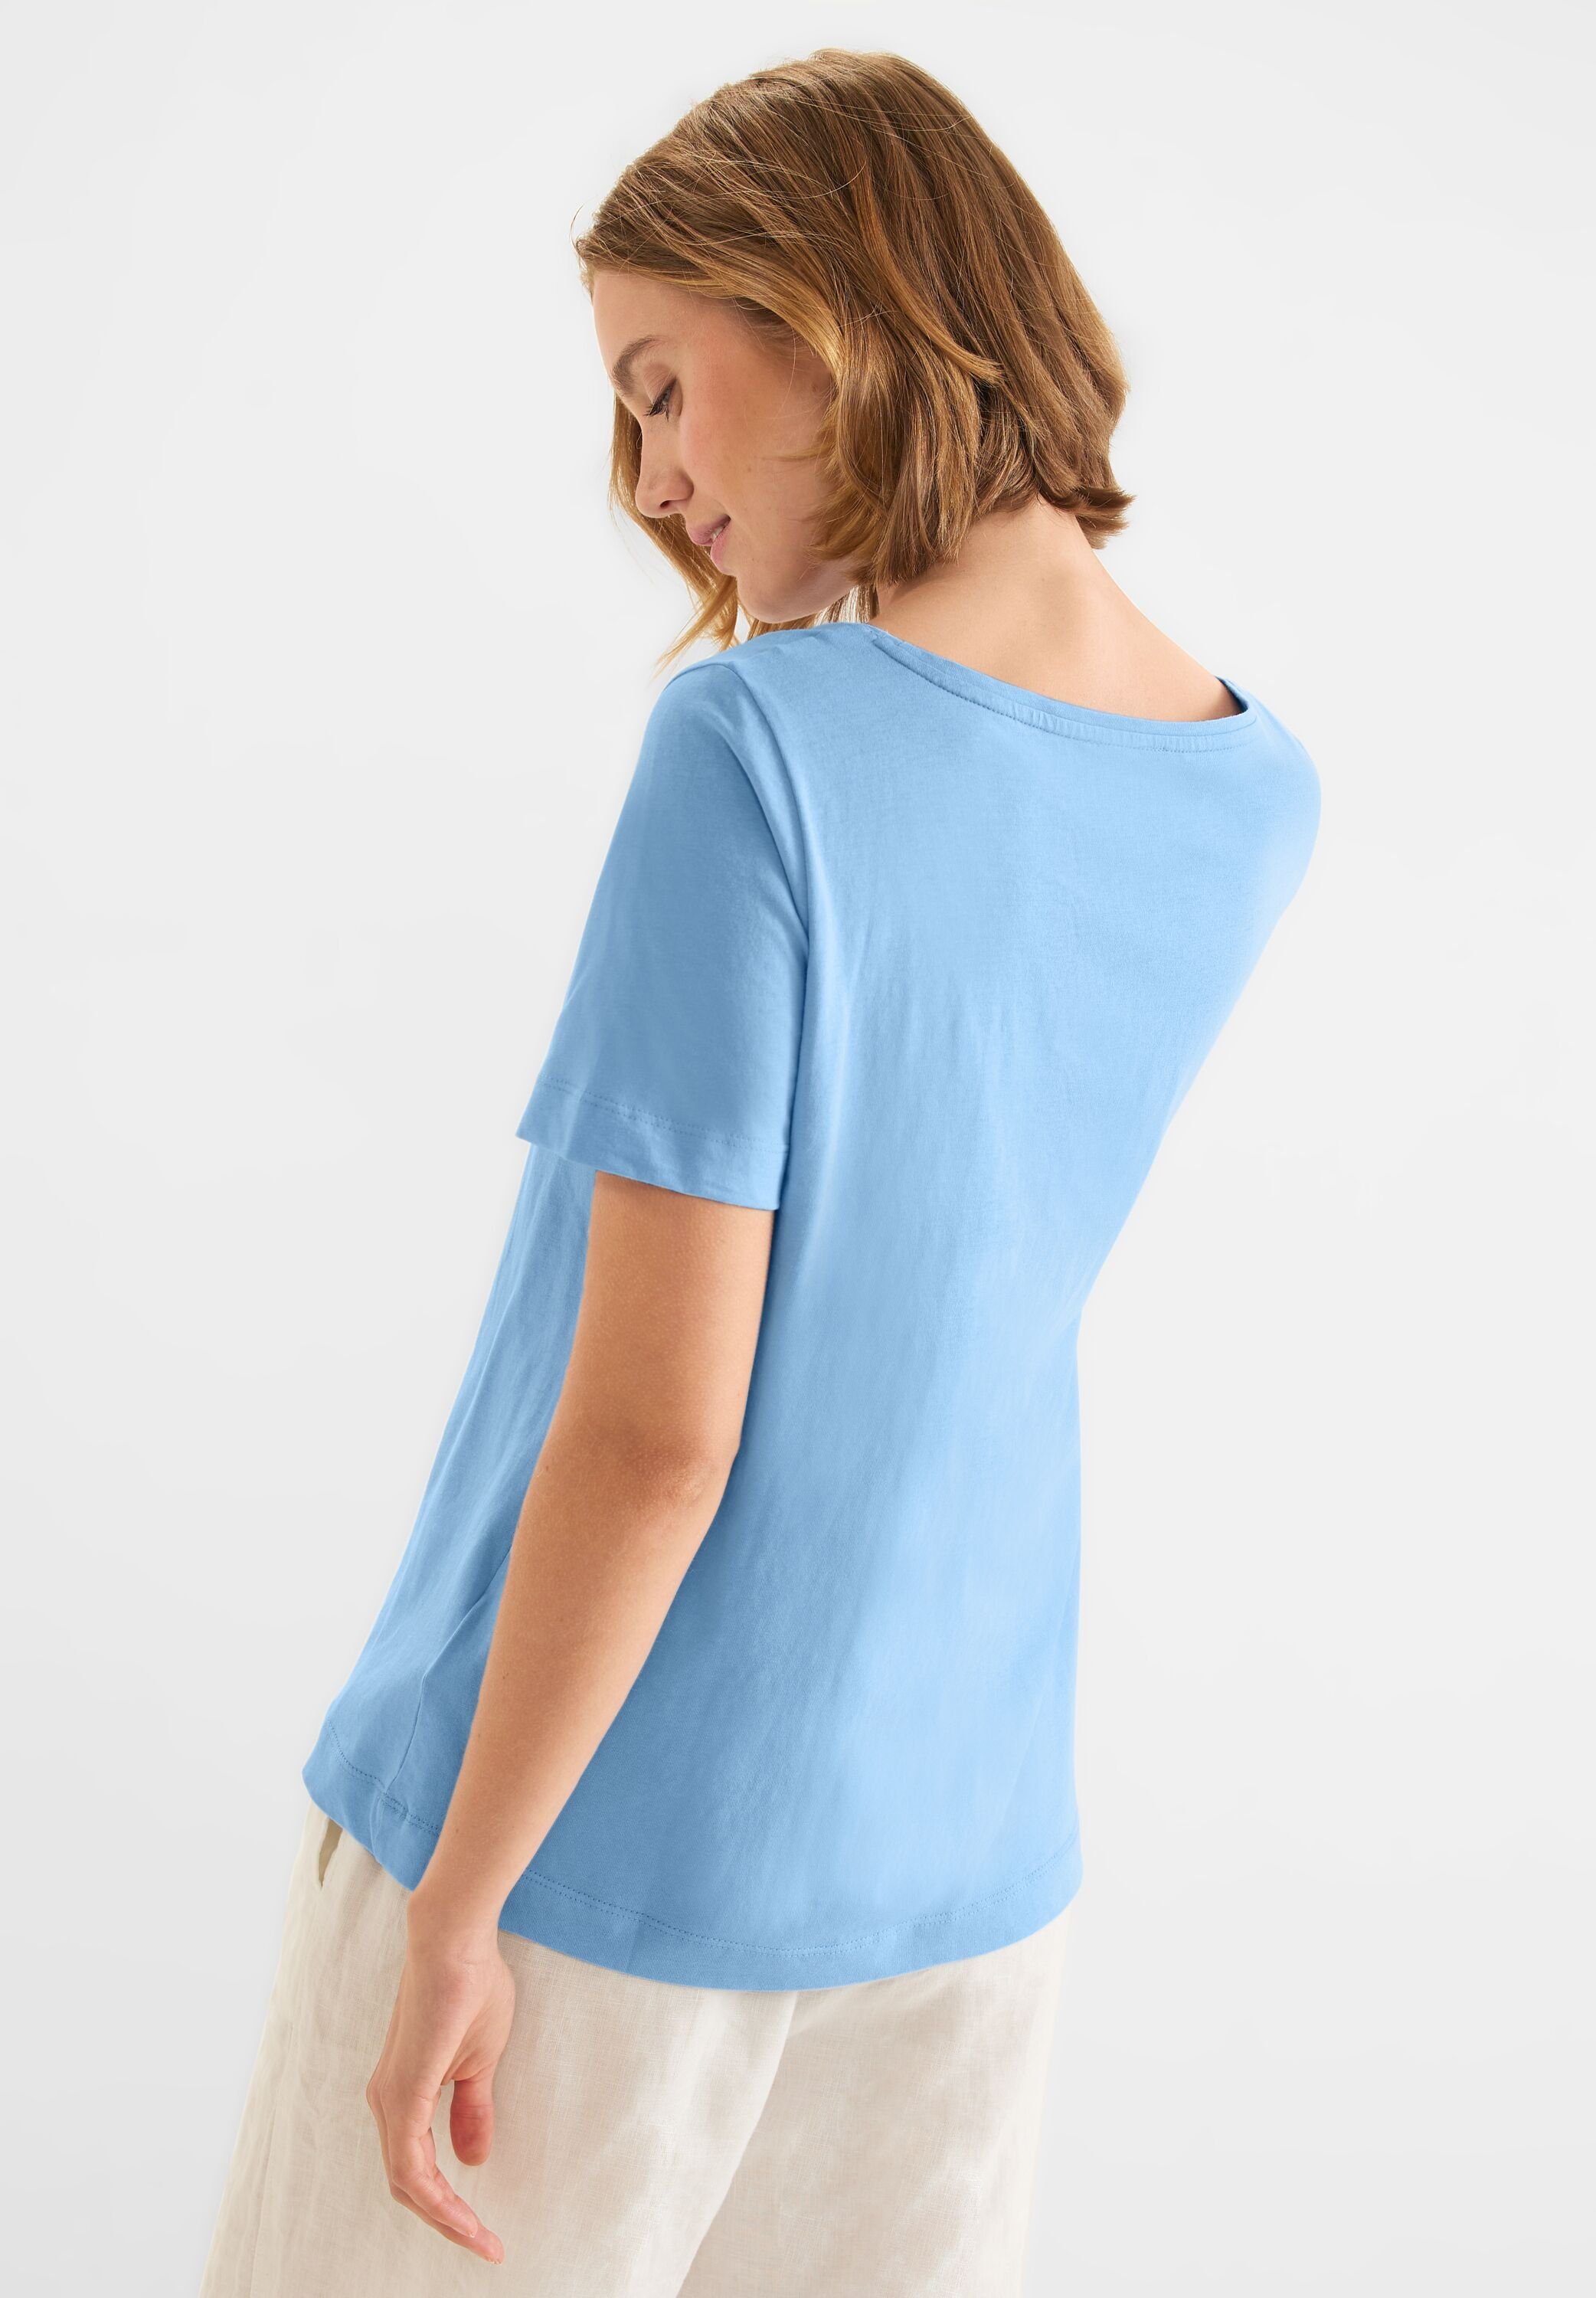 STREET Baumwolle blue splash aus reiner ONE light T-Shirt